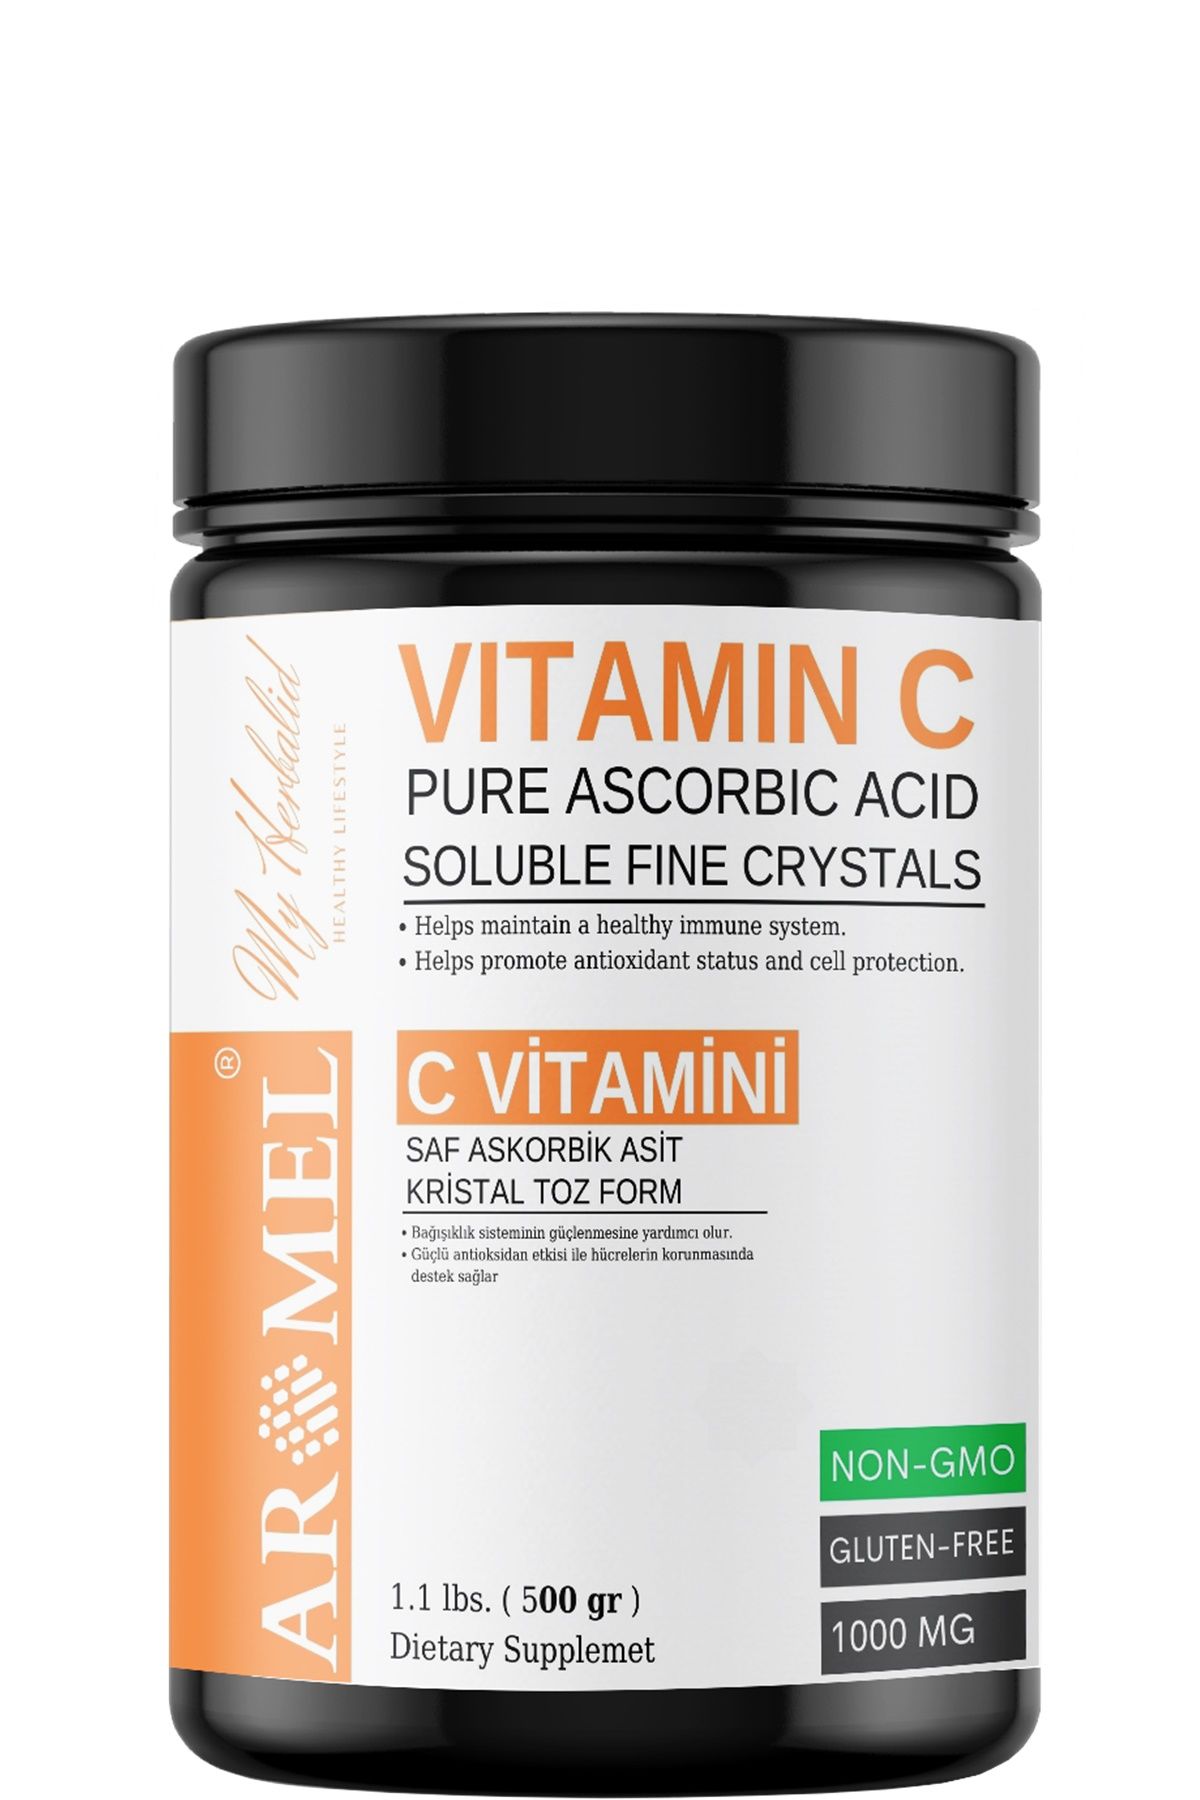 C Vitamini 500 gr | Askorbik Asit | Avrupa,Ekstra Saf | Yenilebilir Toz Form